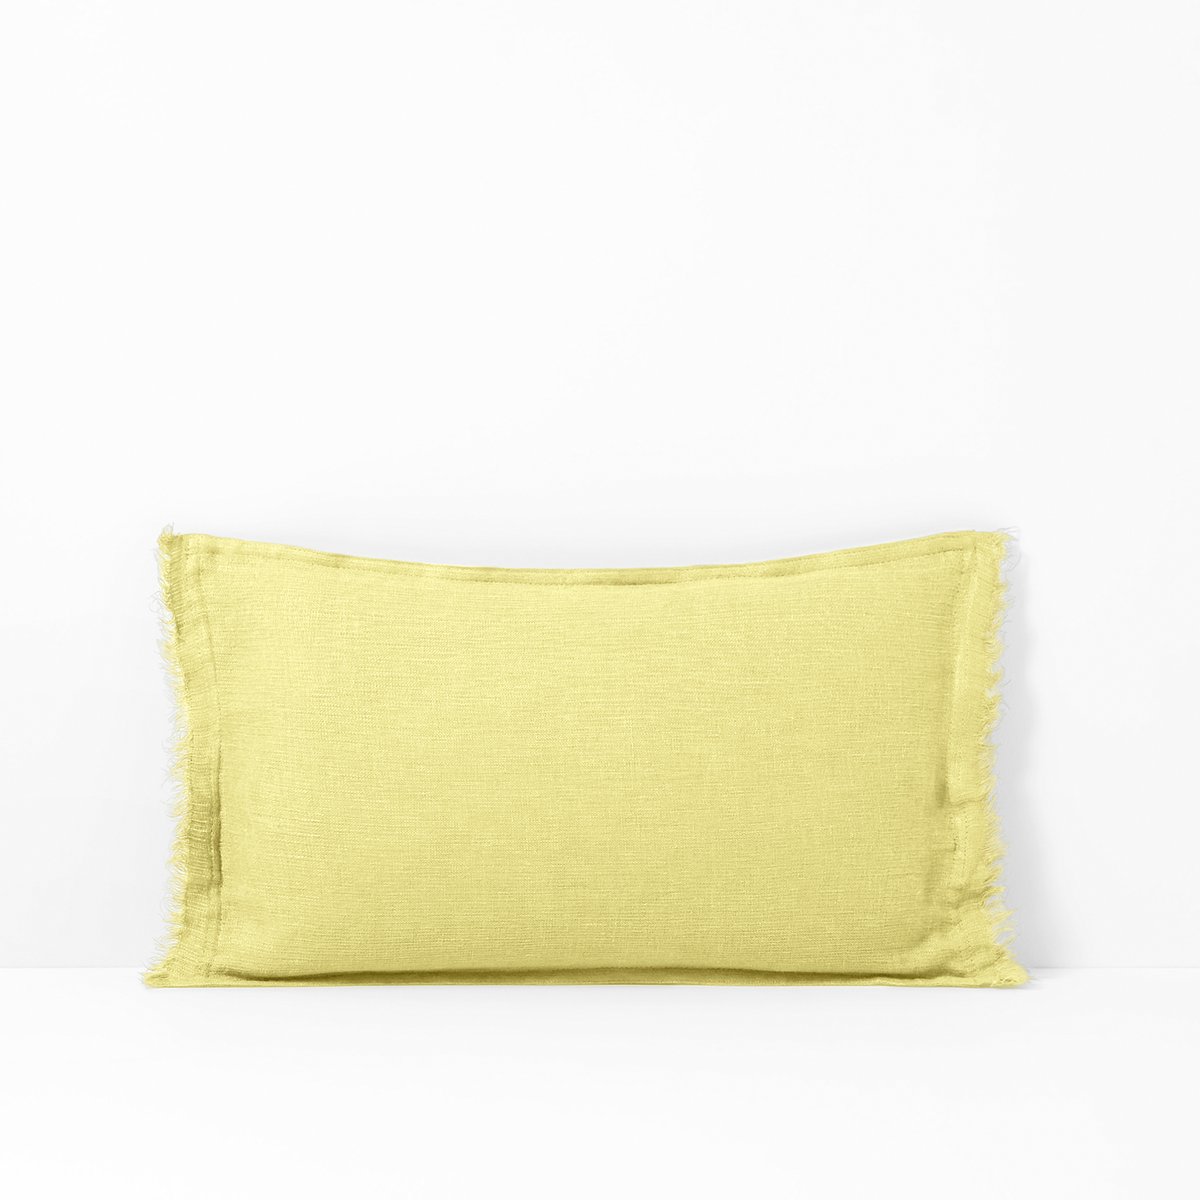 Чехол LaRedoute На подушку-валик из осветленного льна LINANGE 50 x 30 см желтый, размер 50 x 30 см